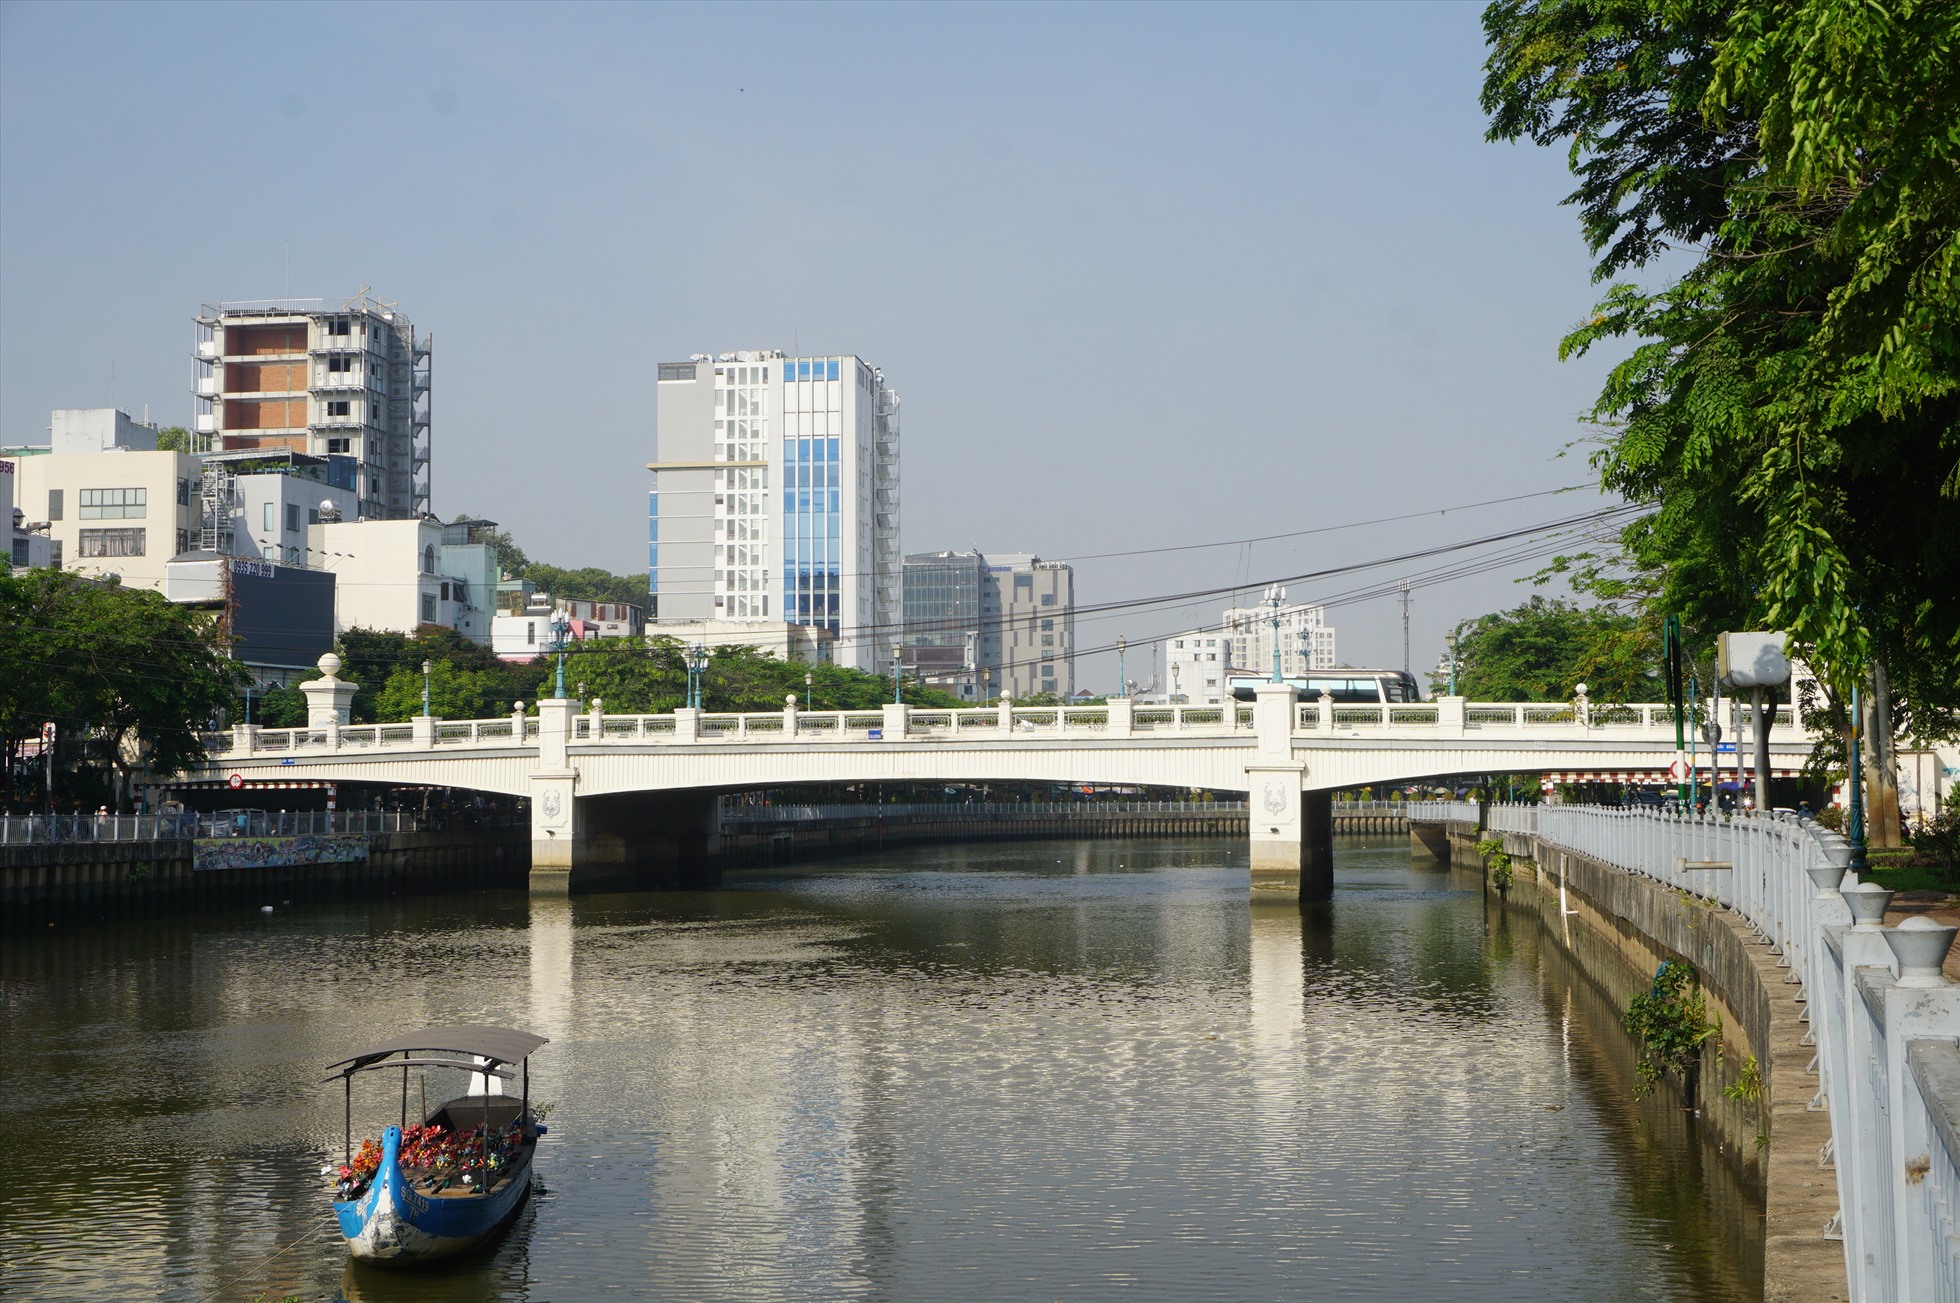 Cầu Bông trên kênh Nhiêu Lộc - Thị Nghè được xây mới nhưng tĩnh không cũng thấp.  Ảnh: Minh Quân